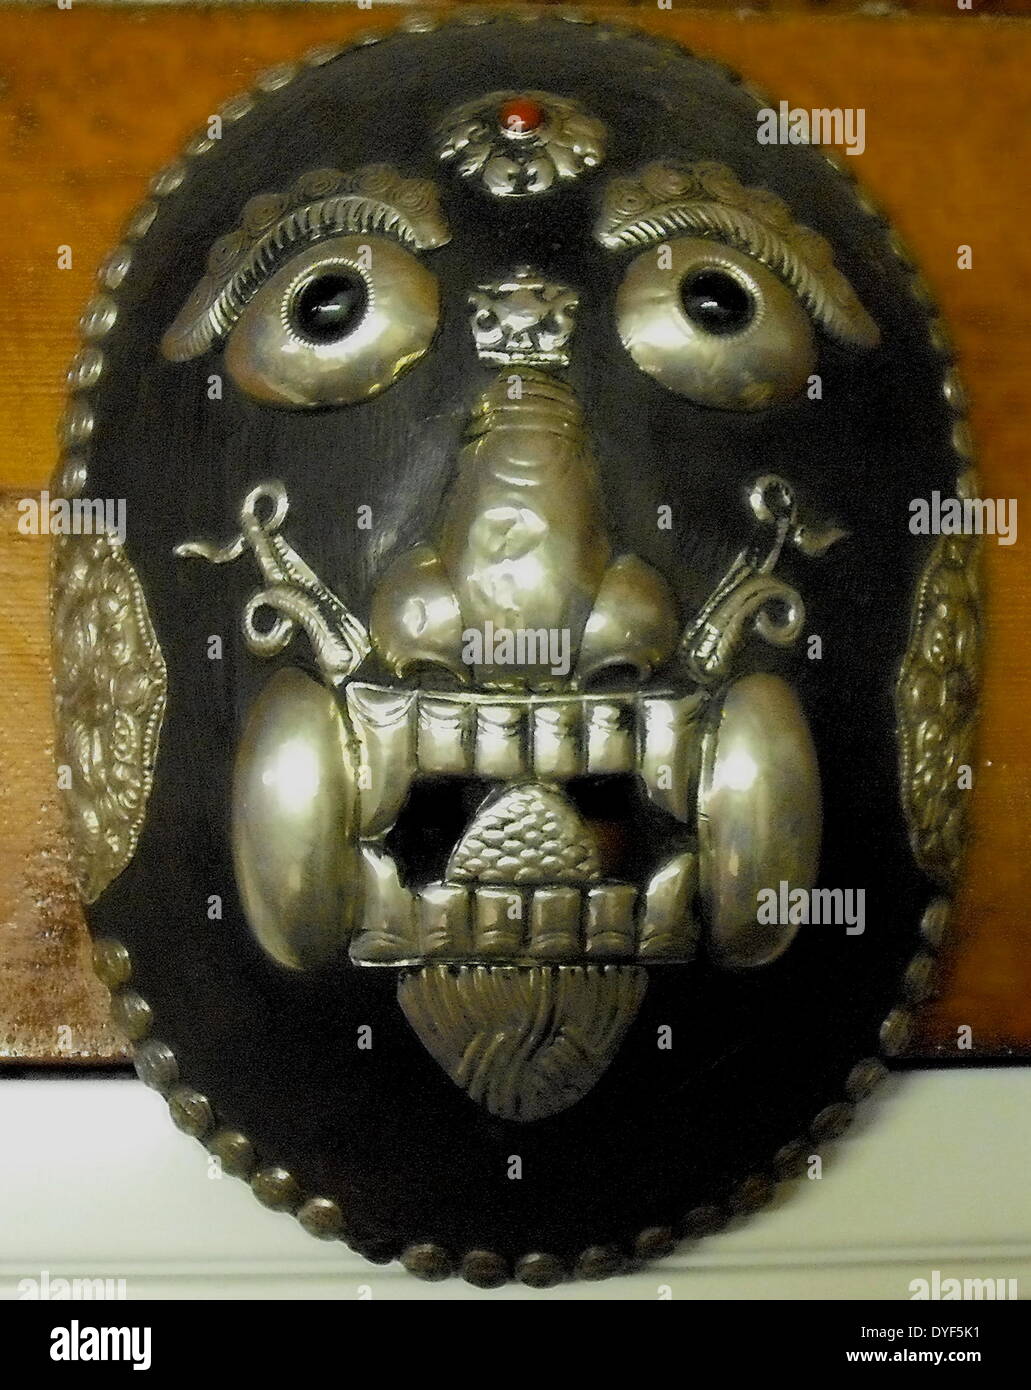 L'ancien Tibet : Mahakala masque, la fin de la dynastie des Qing ; 1800 -  1912 AD, de Lhasa, Tibet. Une divinité protectrice avec une jante de  cinquante crânes. Bois et argent.